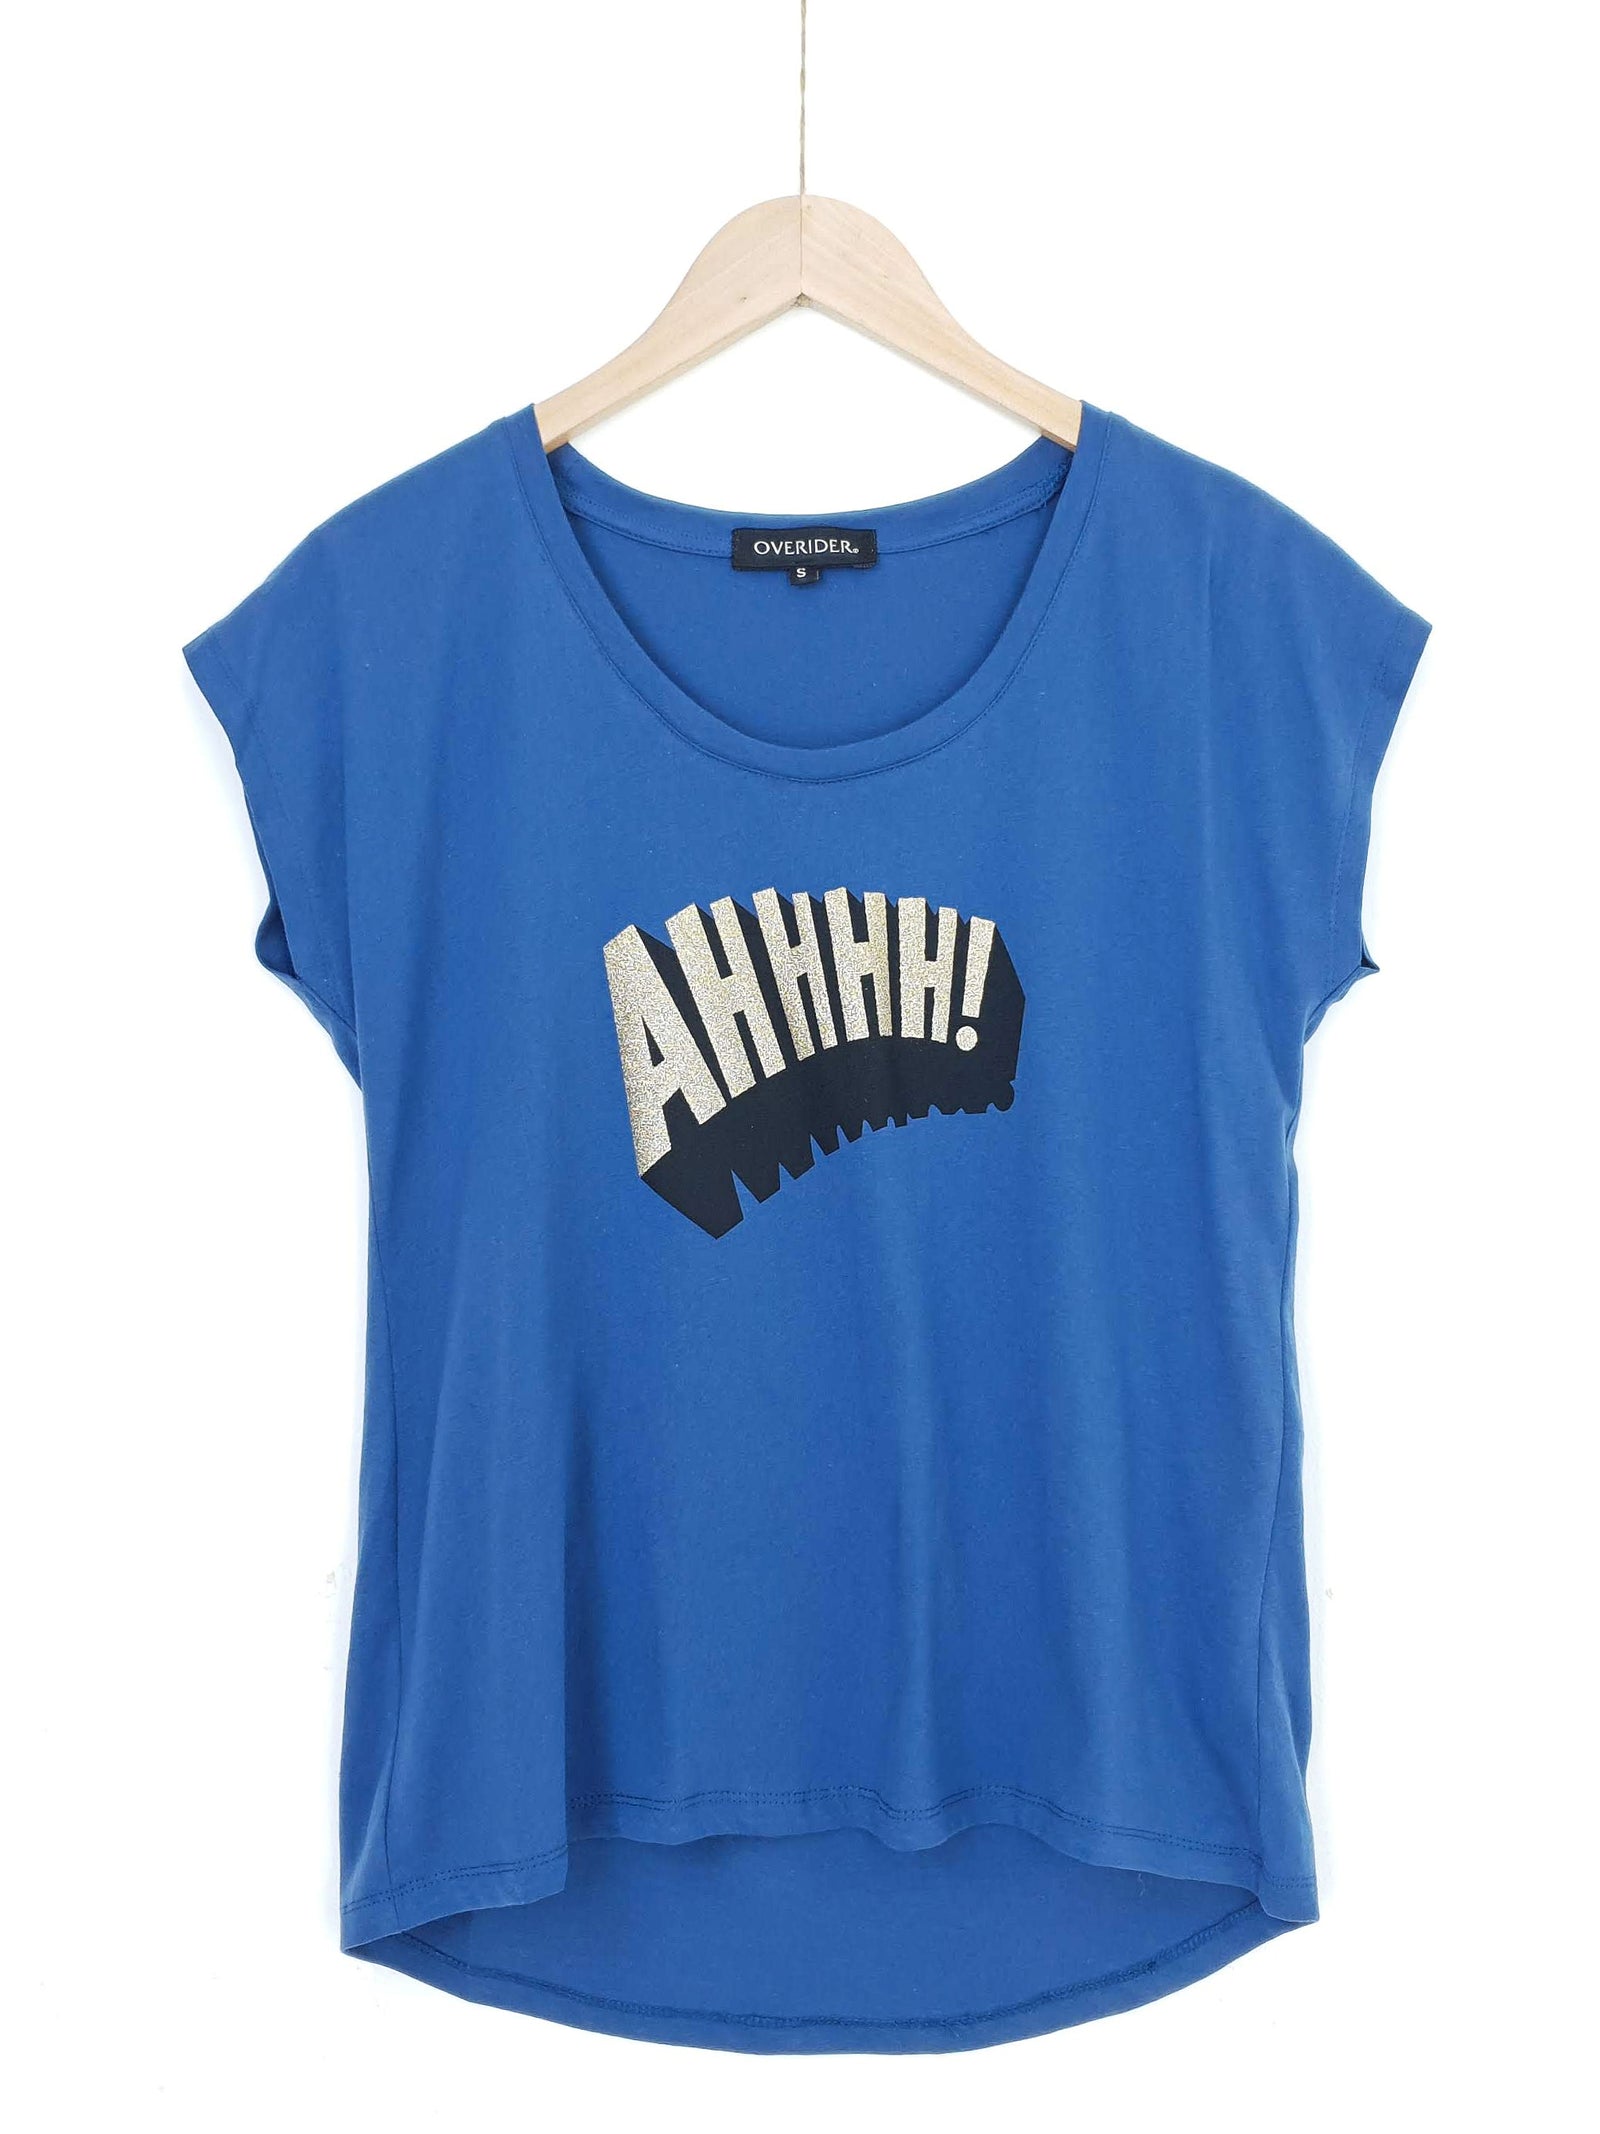 AHHHH | Logo T Shirt |Blue